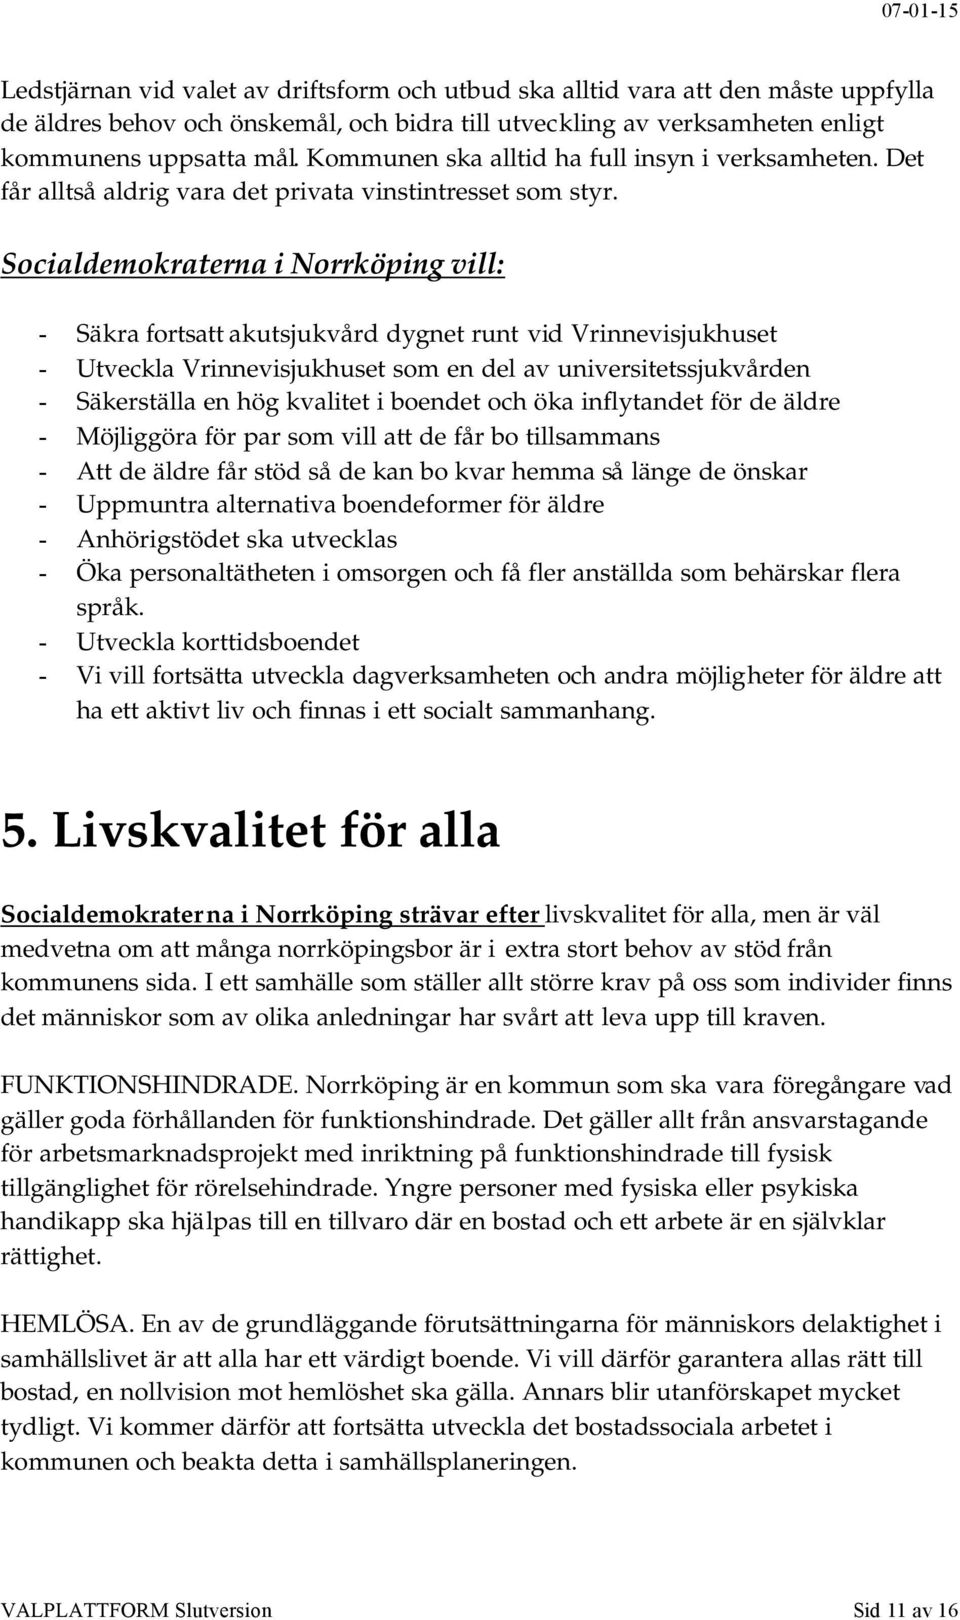 Socialdemokraterna i Norrköping vill: - Säkra fortsatt akutsjukvård dygnet runt vid Vrinnevisjukhuset - Utveckla Vrinnevisjukhuset som en del av universitetssjukvården - Säkerställa en hög kvalitet i